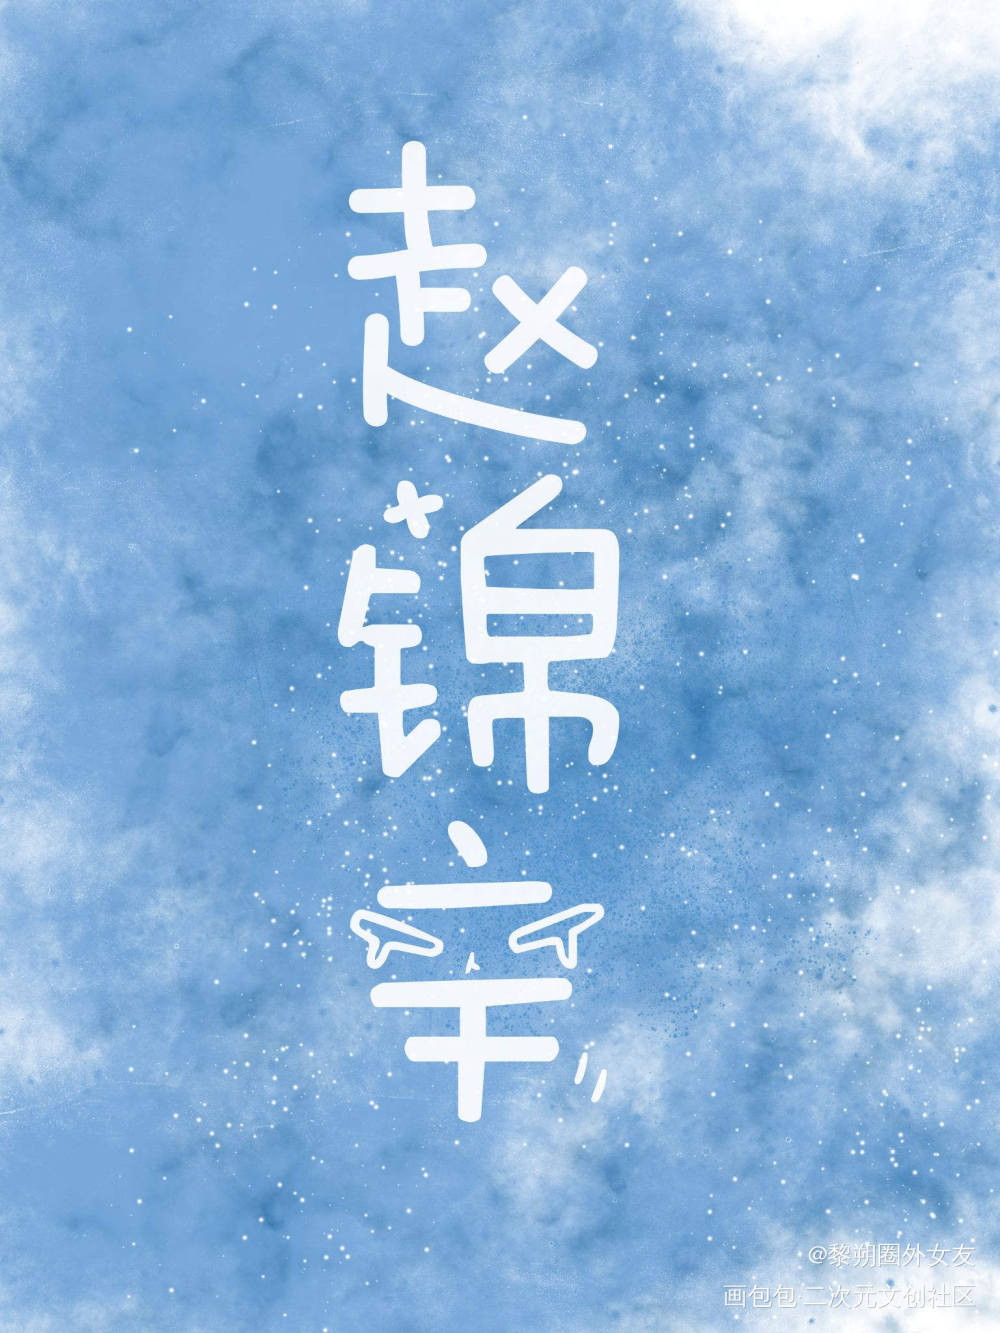 我叫赵锦辛，锦绣的锦，辛勤的辛_188男团赵锦辛字体设计绘画作品